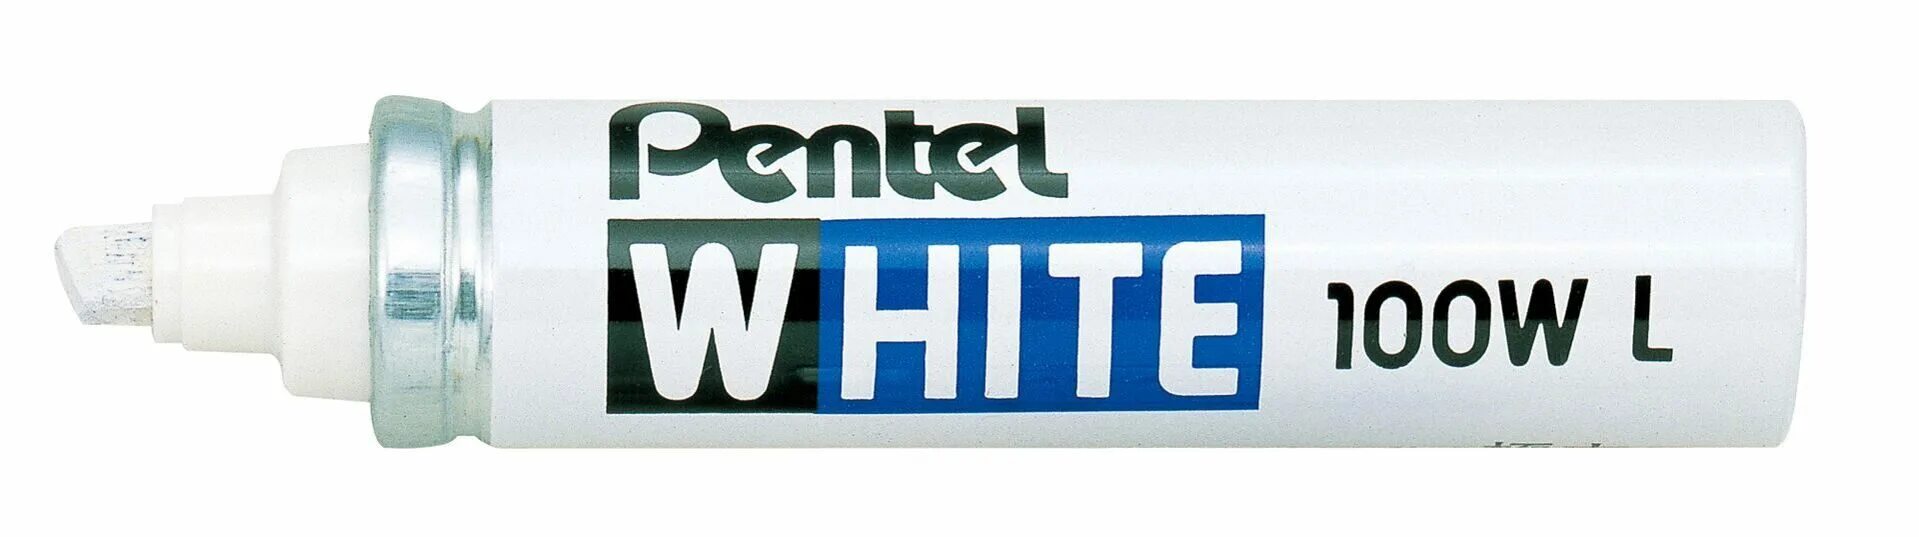 Маркеры white. Маркер Pentel White 100w белый. Маркер Pentel x100w. Маркер Pentel x100w белый перманентный. Маркер промышленный Pentel White р-266.